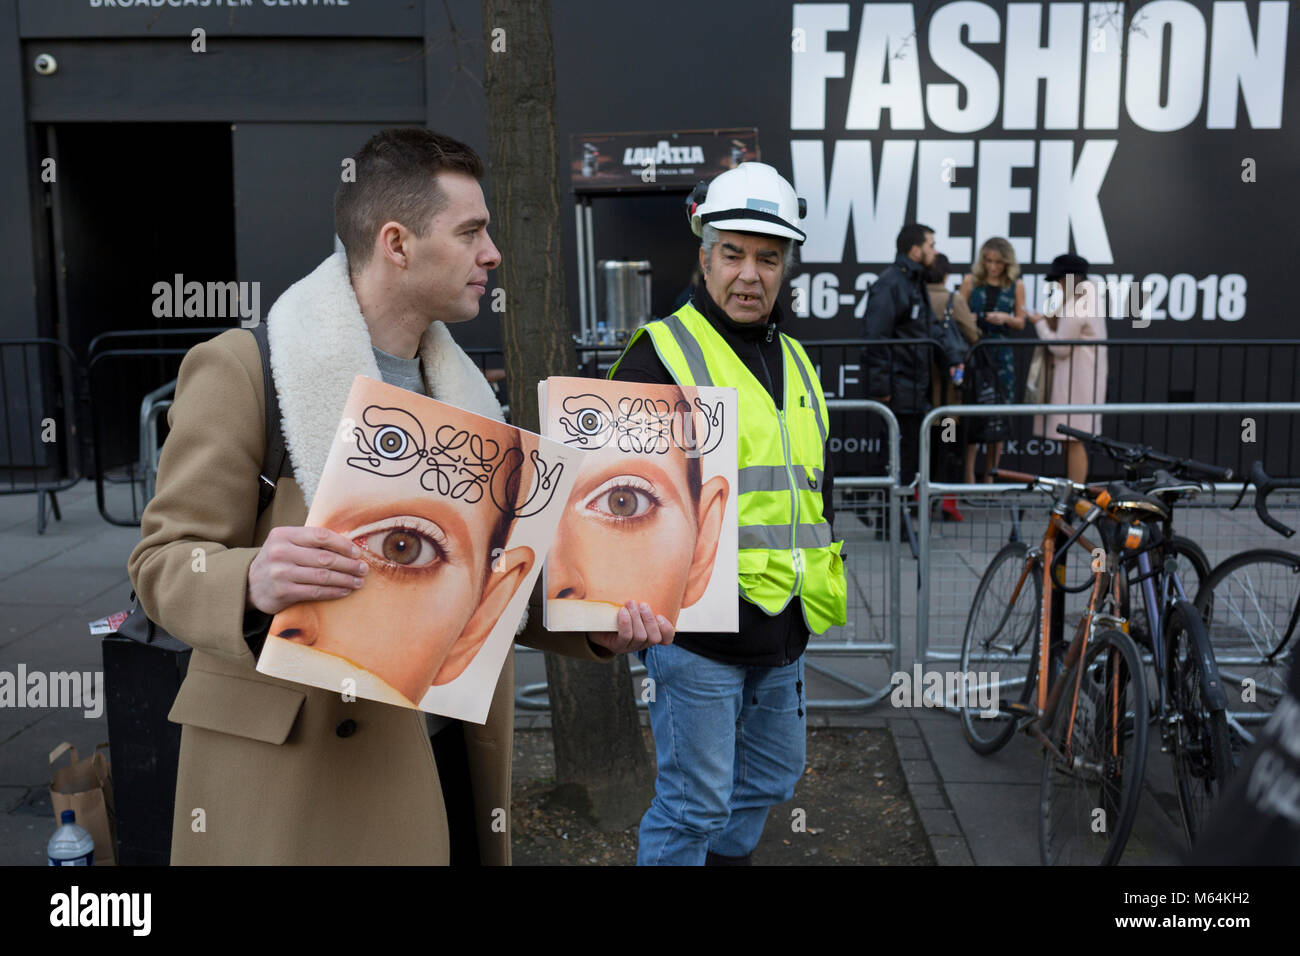 Kostenlose Zeitschriften mit Auge ist ein Modell, das auf dem Cover werden bereits am ersten Tag der London Fashion Week übergeben, am Strand, am 16. Februar 2018 in London, England, Stockfoto